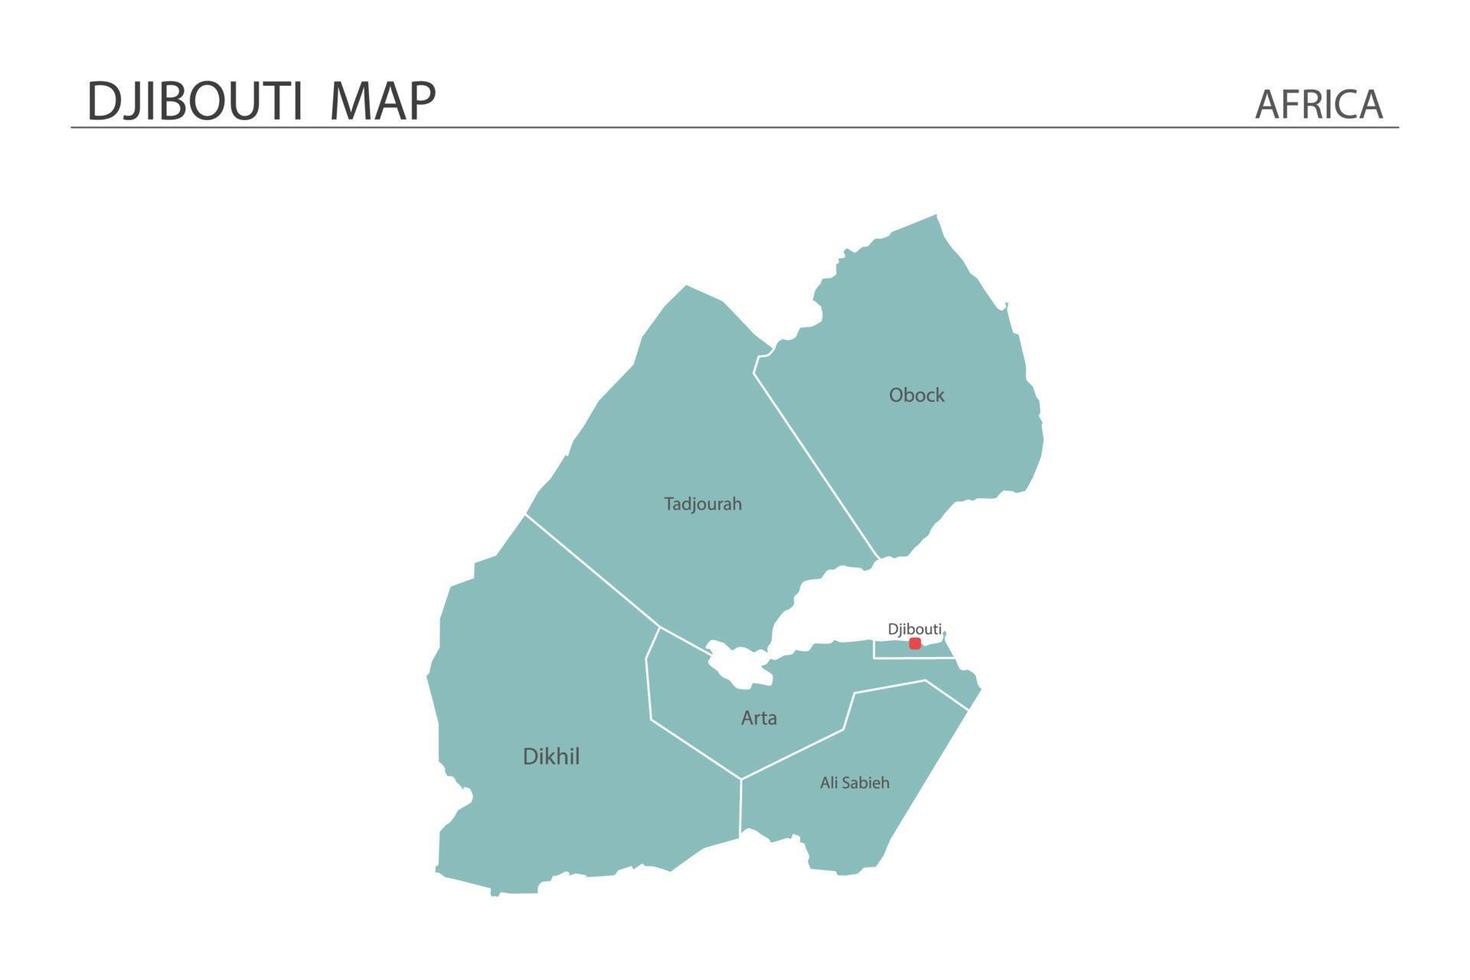 Djibouti mapa ilustración vectorial sobre fondo blanco. el mapa tiene toda la provincia y marca la ciudad capital de djibouti. vector